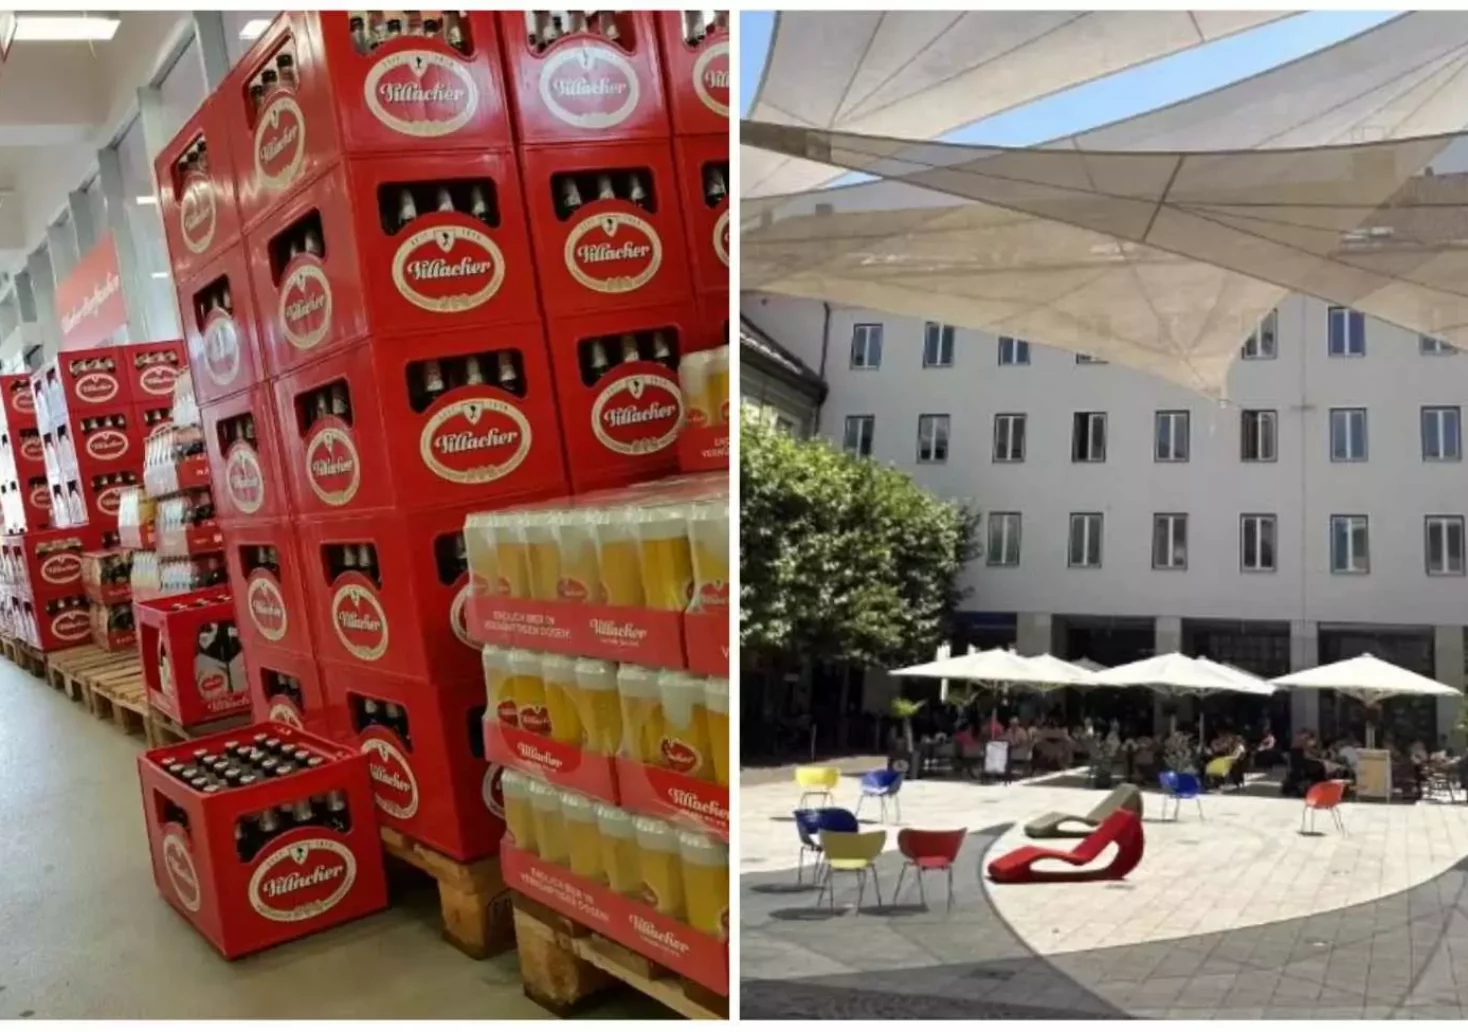 Foto in Beitrag von 5min.at: Zu sehen sind einige Kisten Villacher Bier in einer Montage mit dem Villacher Rathausplatz und dem Rathauscafé im Hintergrund.